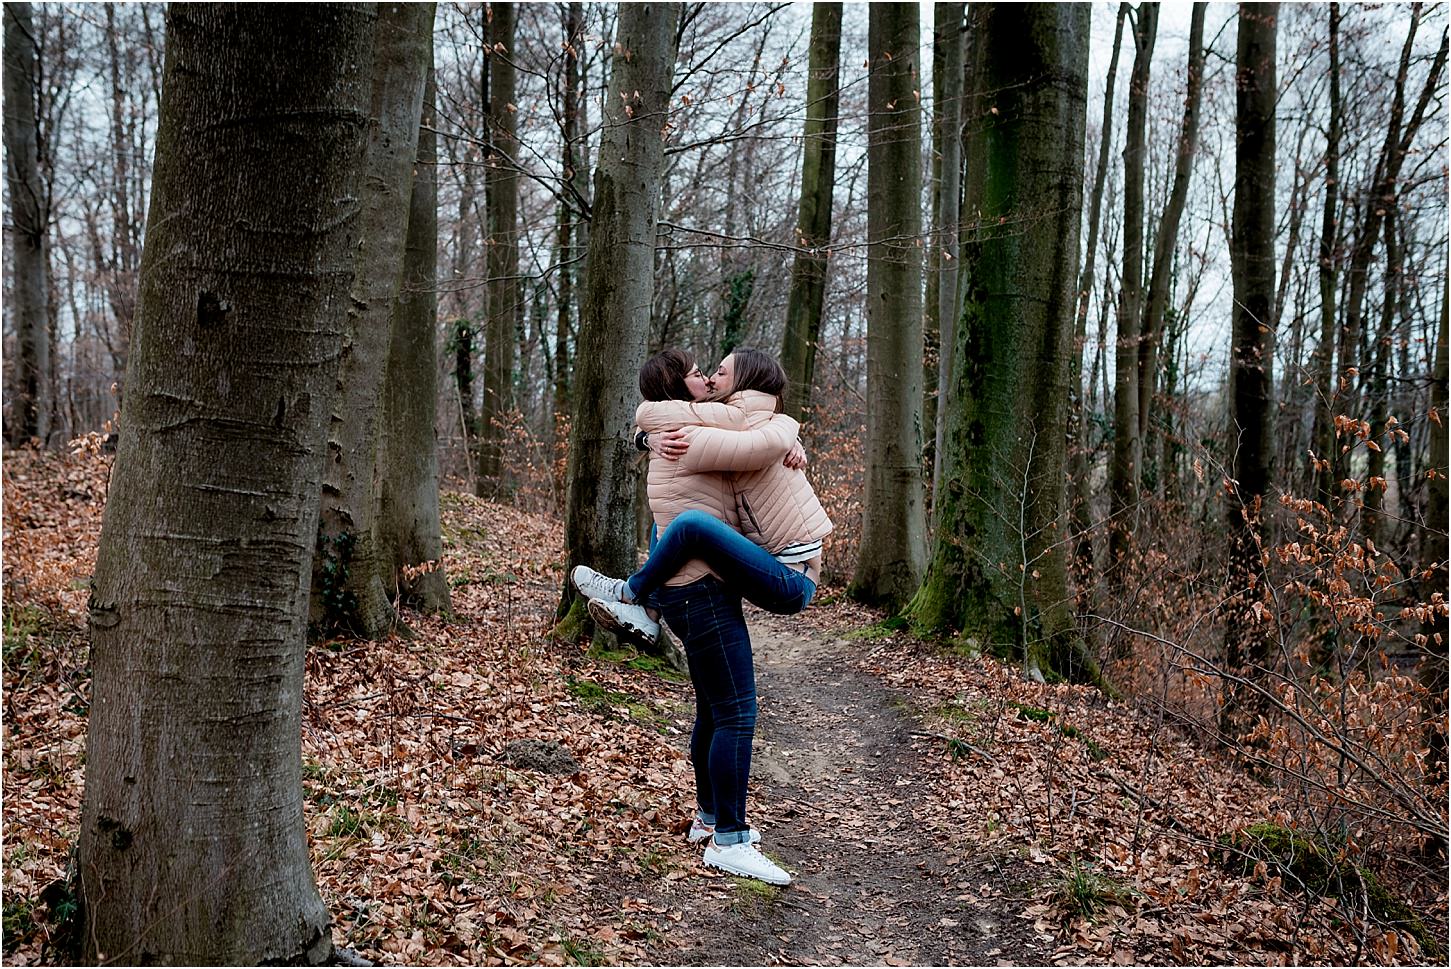 Portraits de Couple dans la Forêt